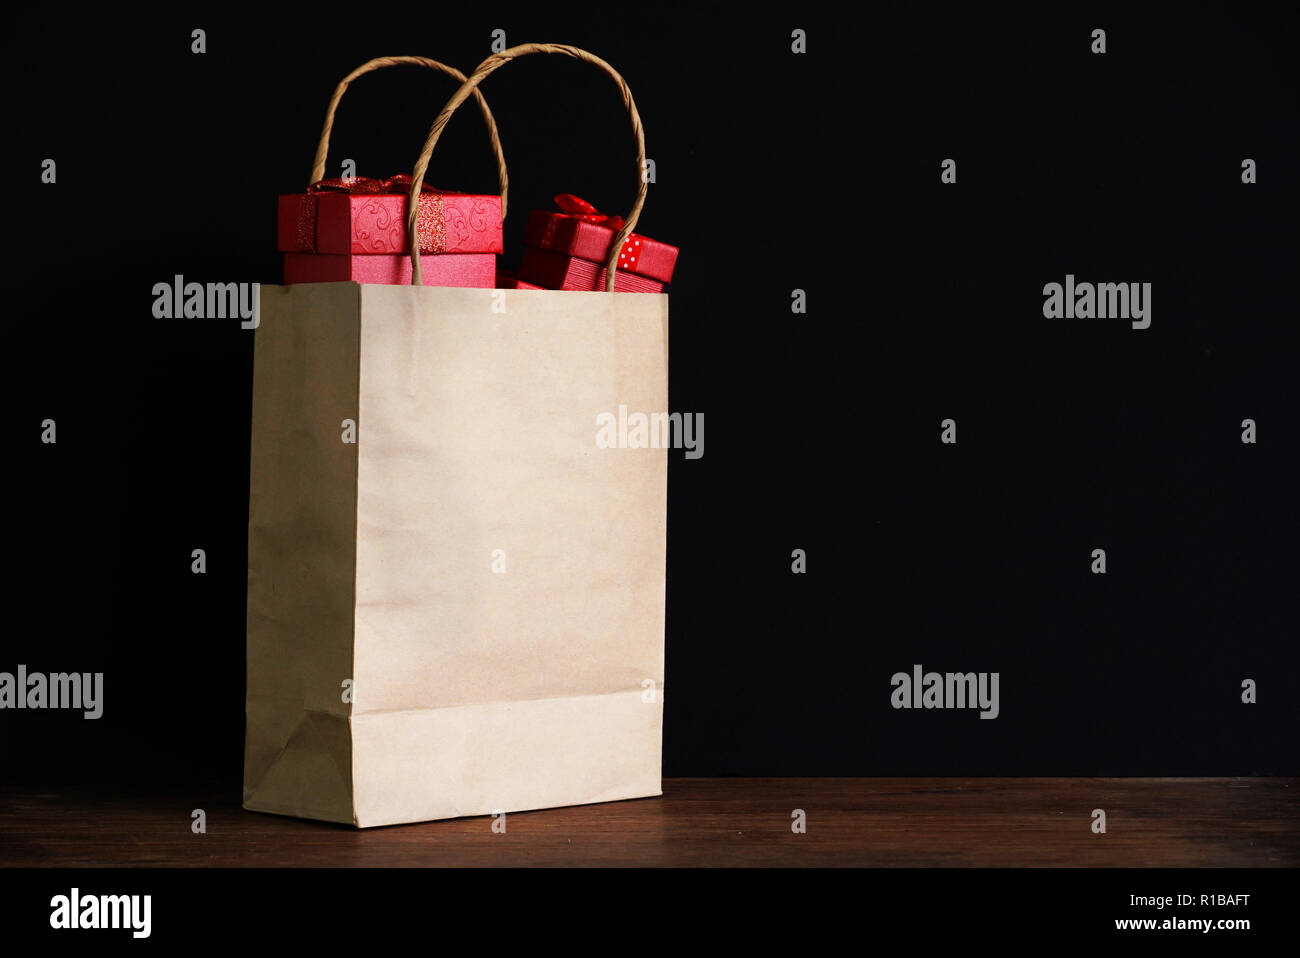 Albero confezione regalo rossa in borsa da shopping su sfondo nero per lo shopping del tema. Foto Stock